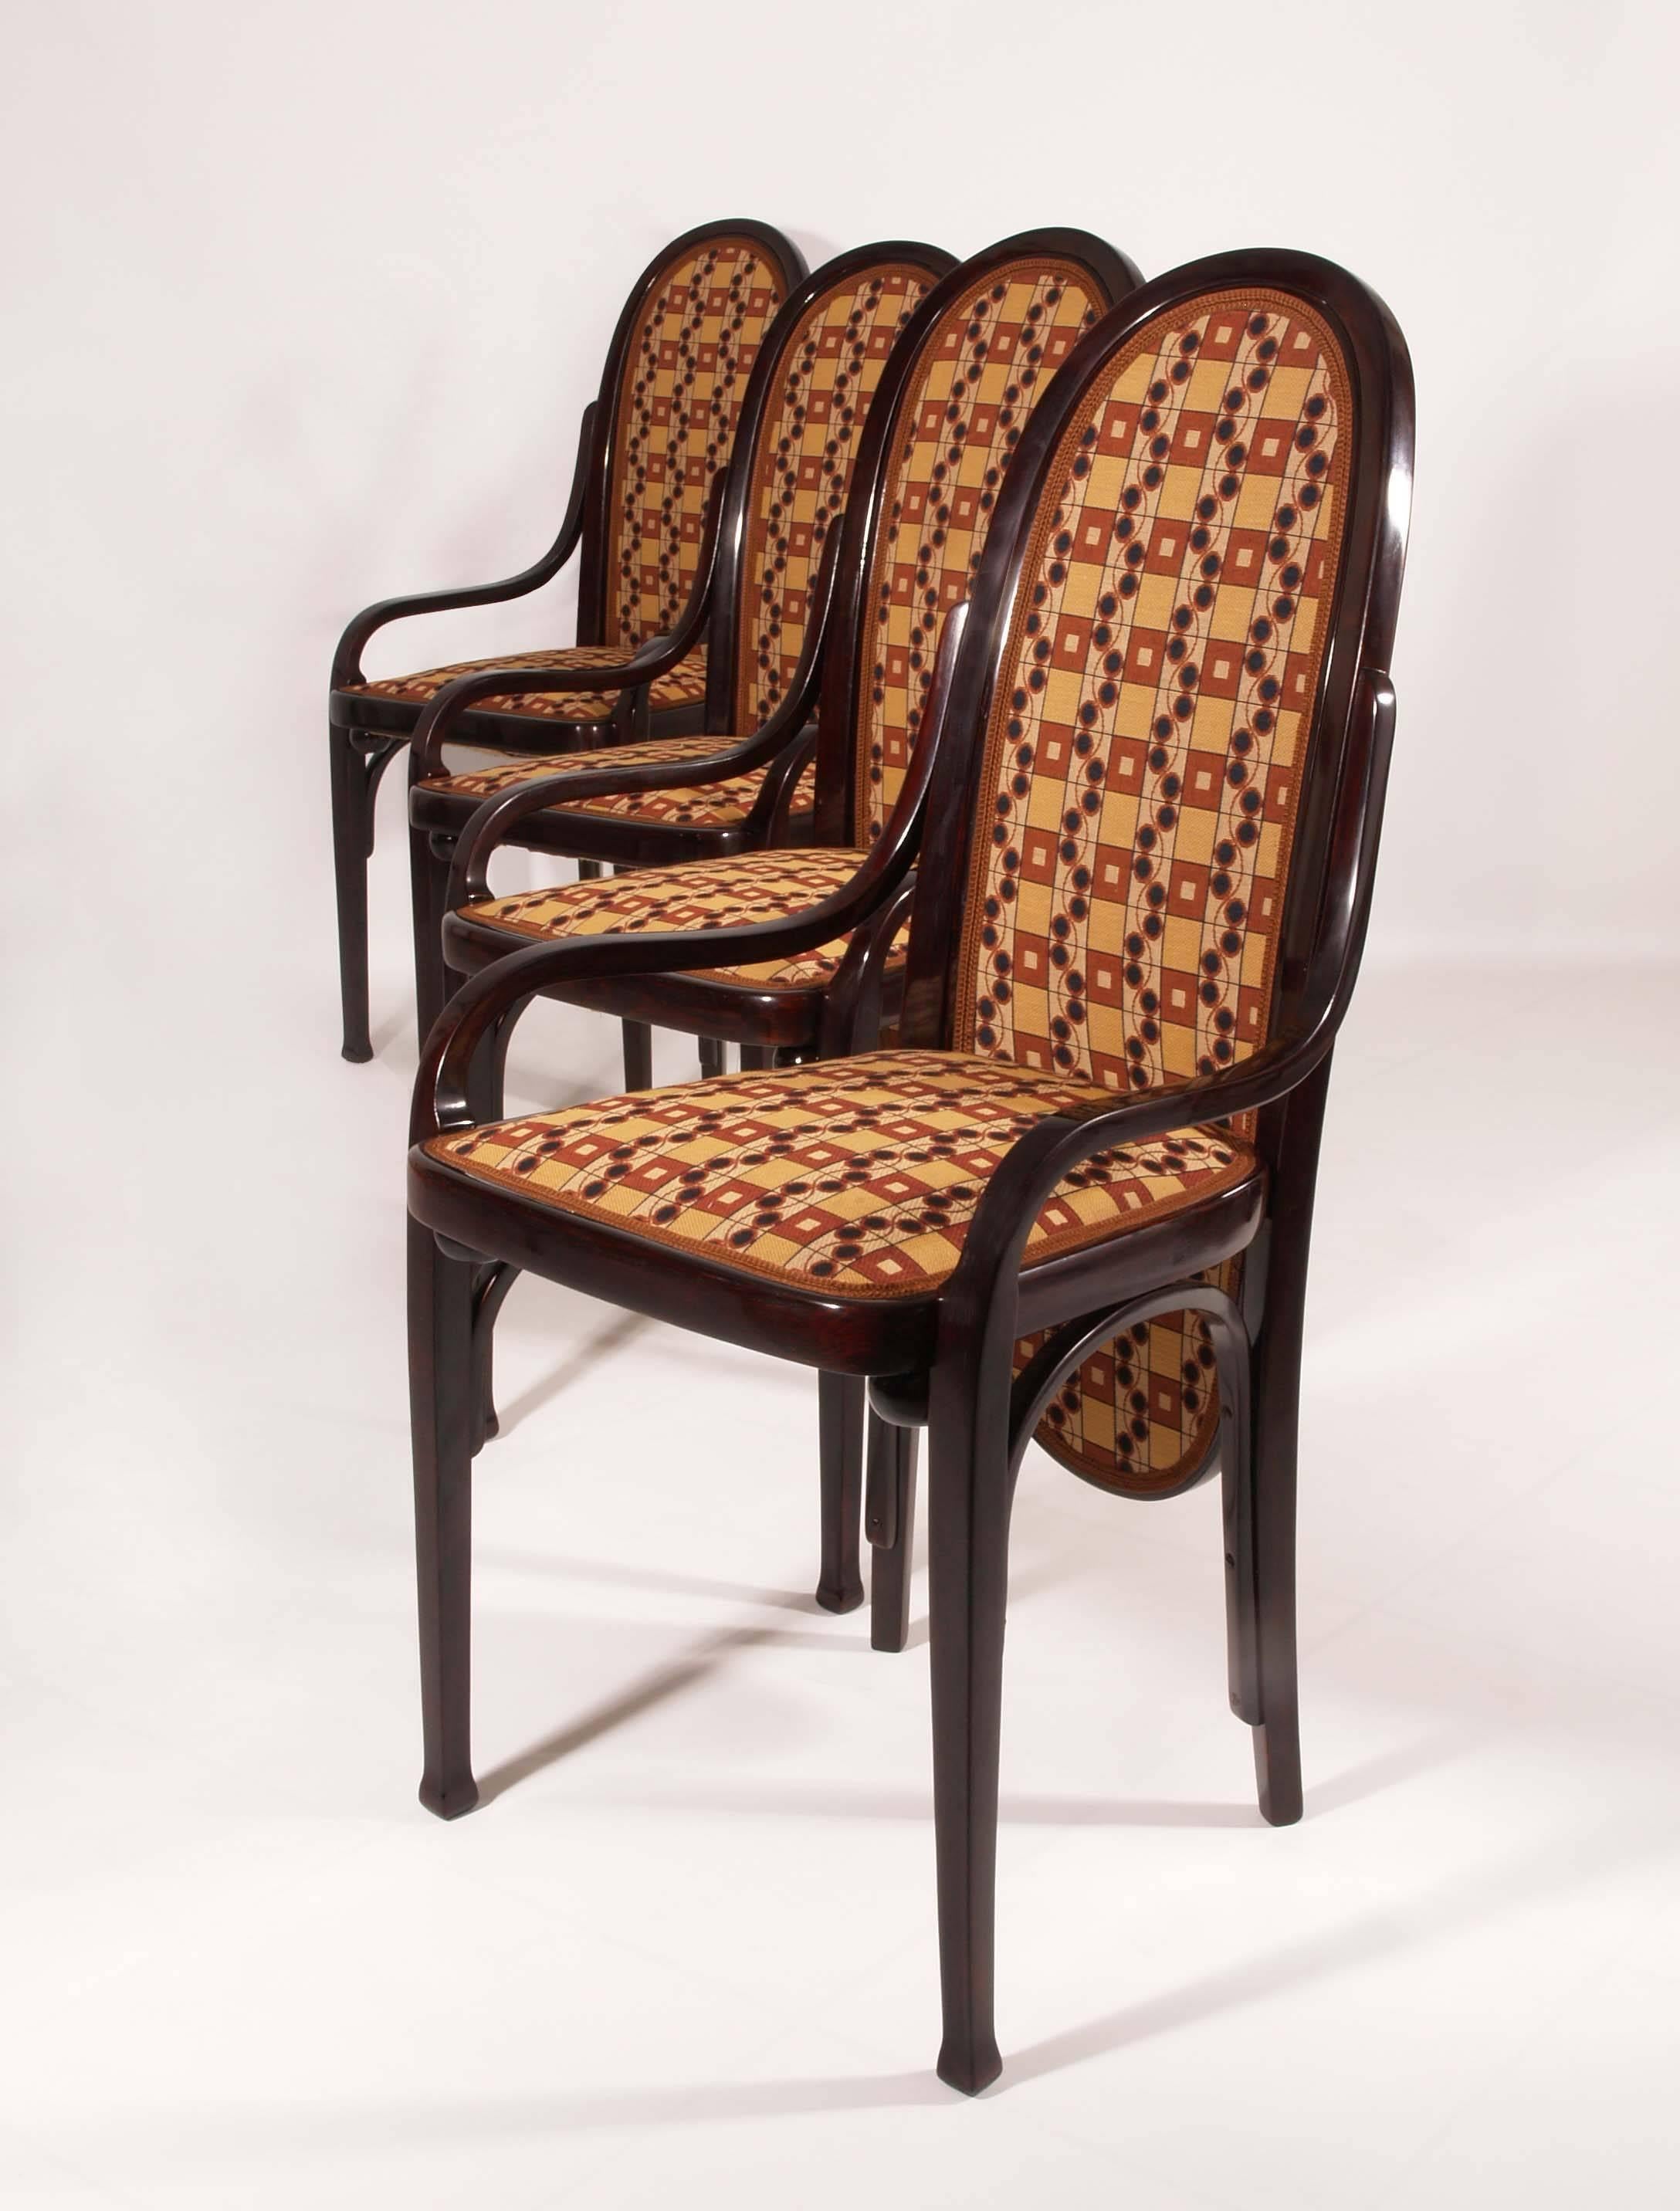 Four Art Nouveau Bentwood Chairs Thonet, Vienna, 1900 (Österreichisch)